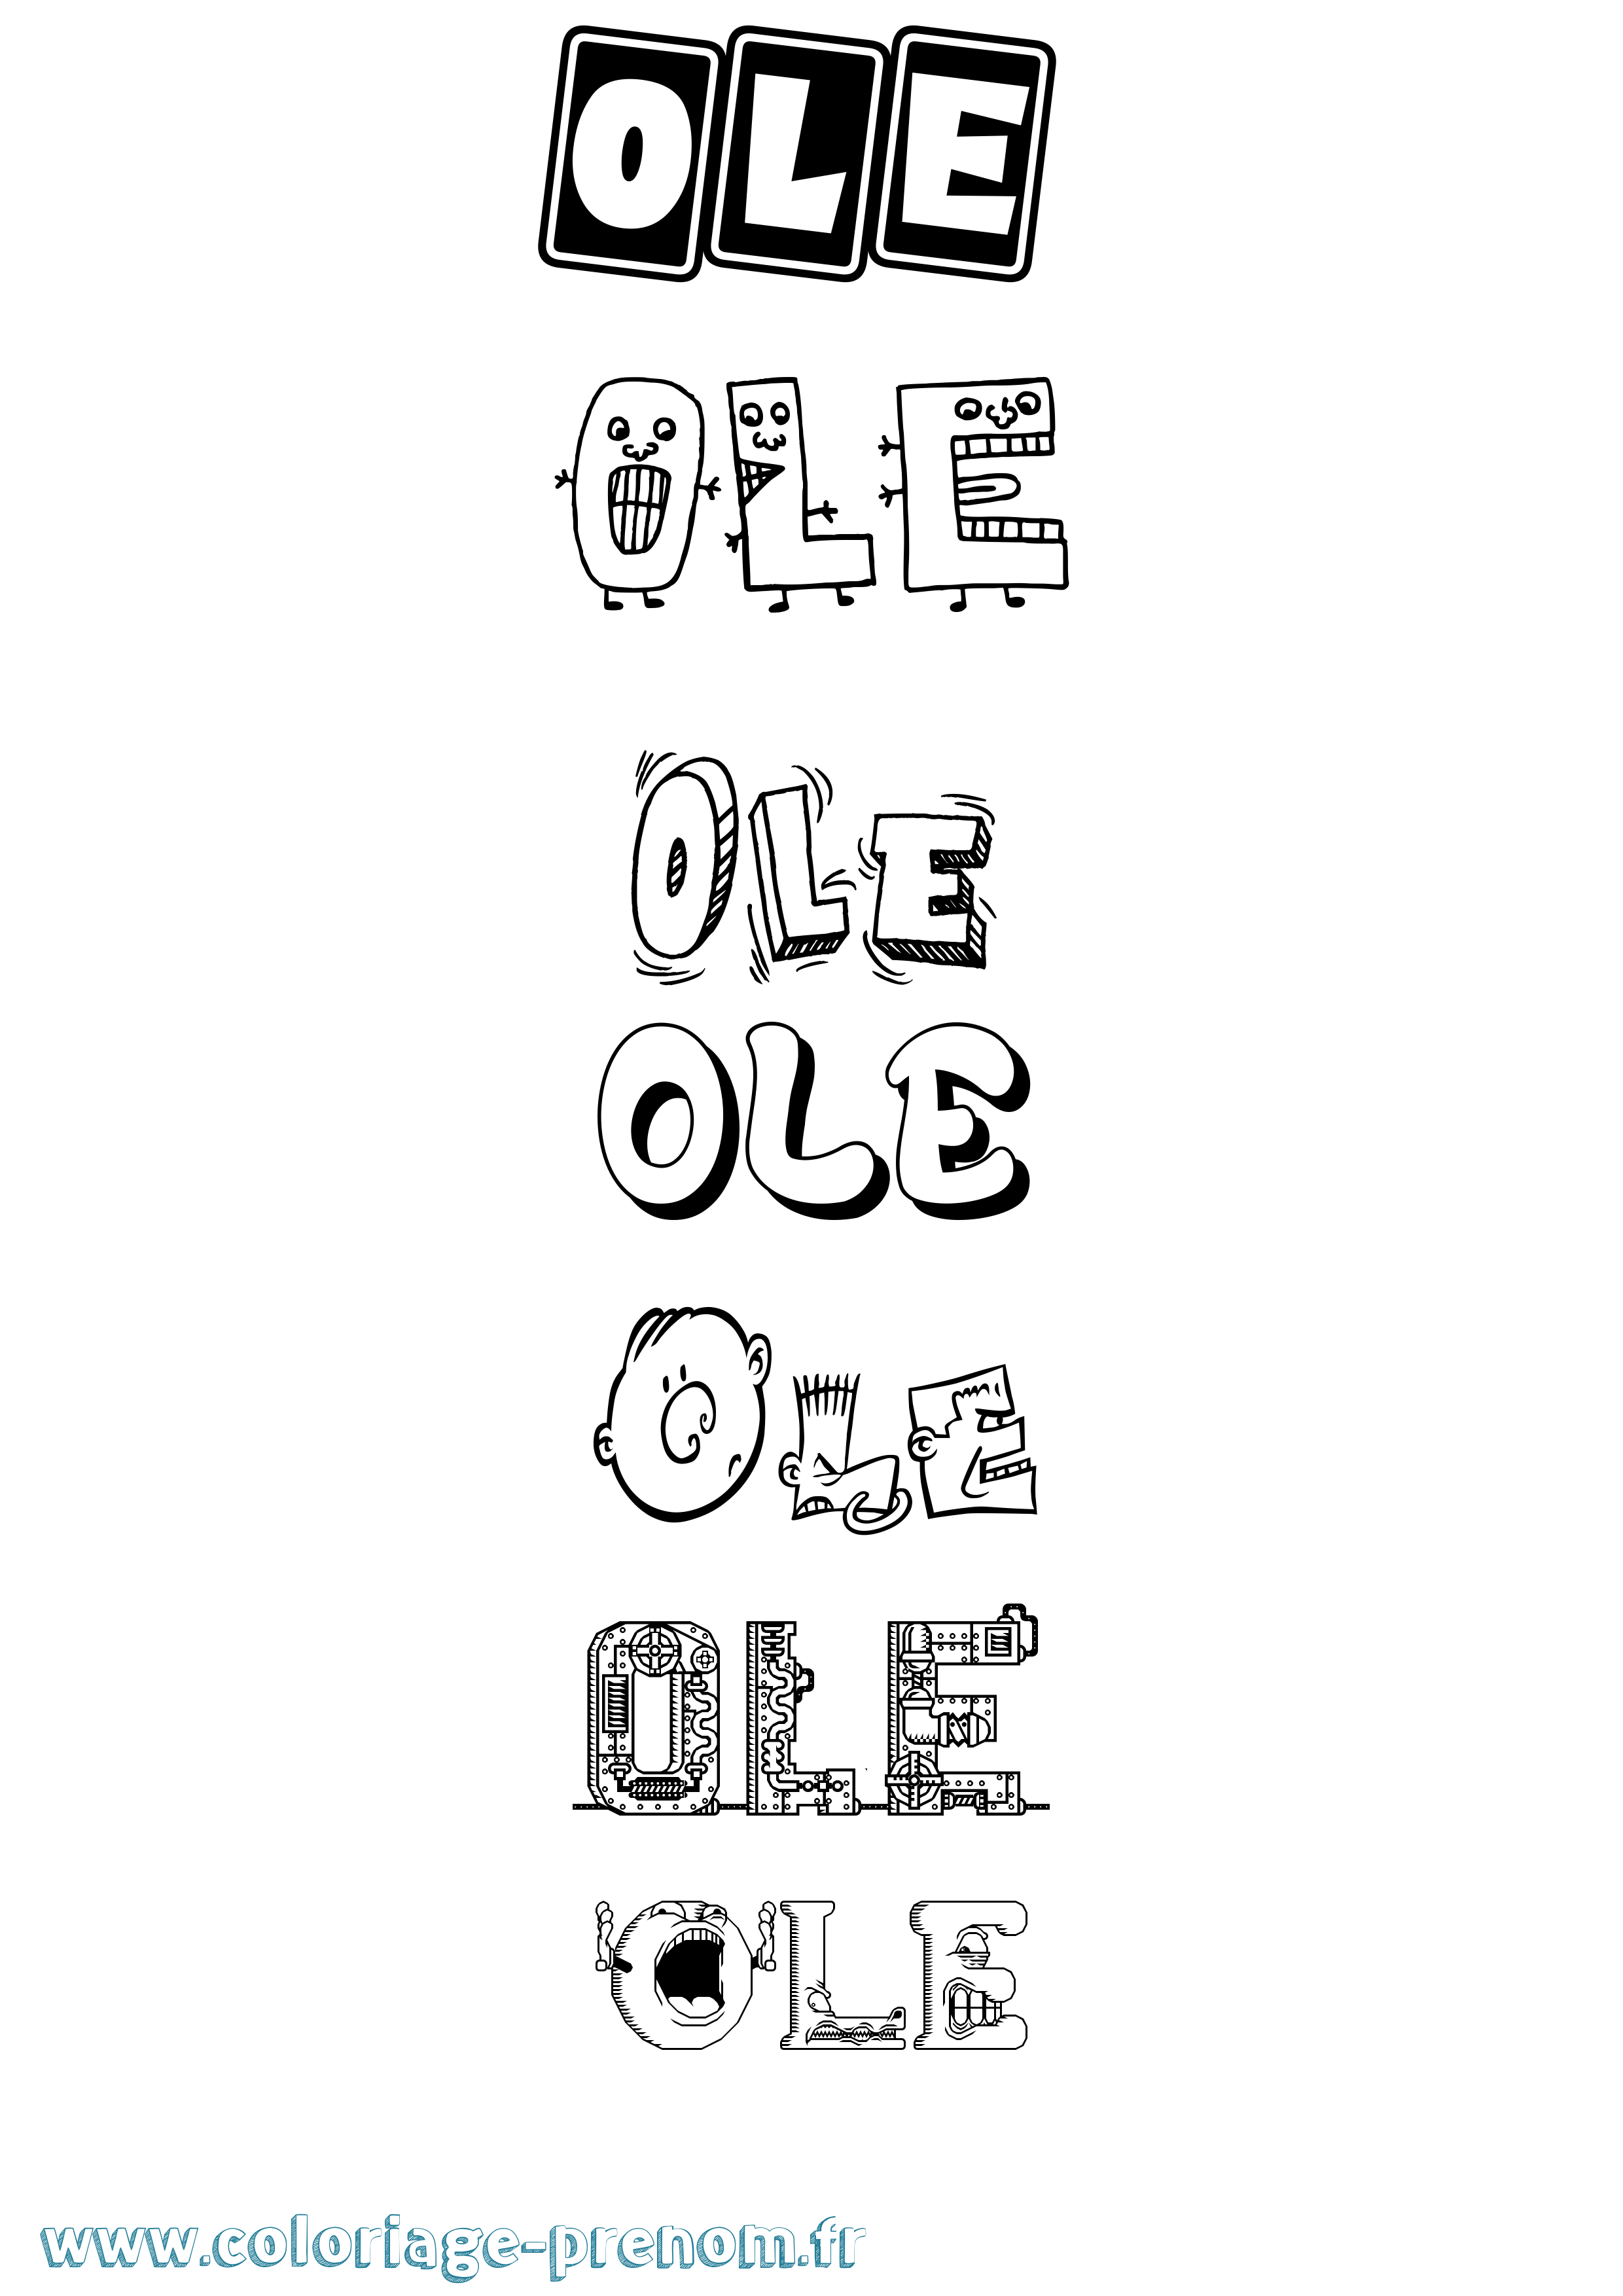 Coloriage prénom Ole Fun